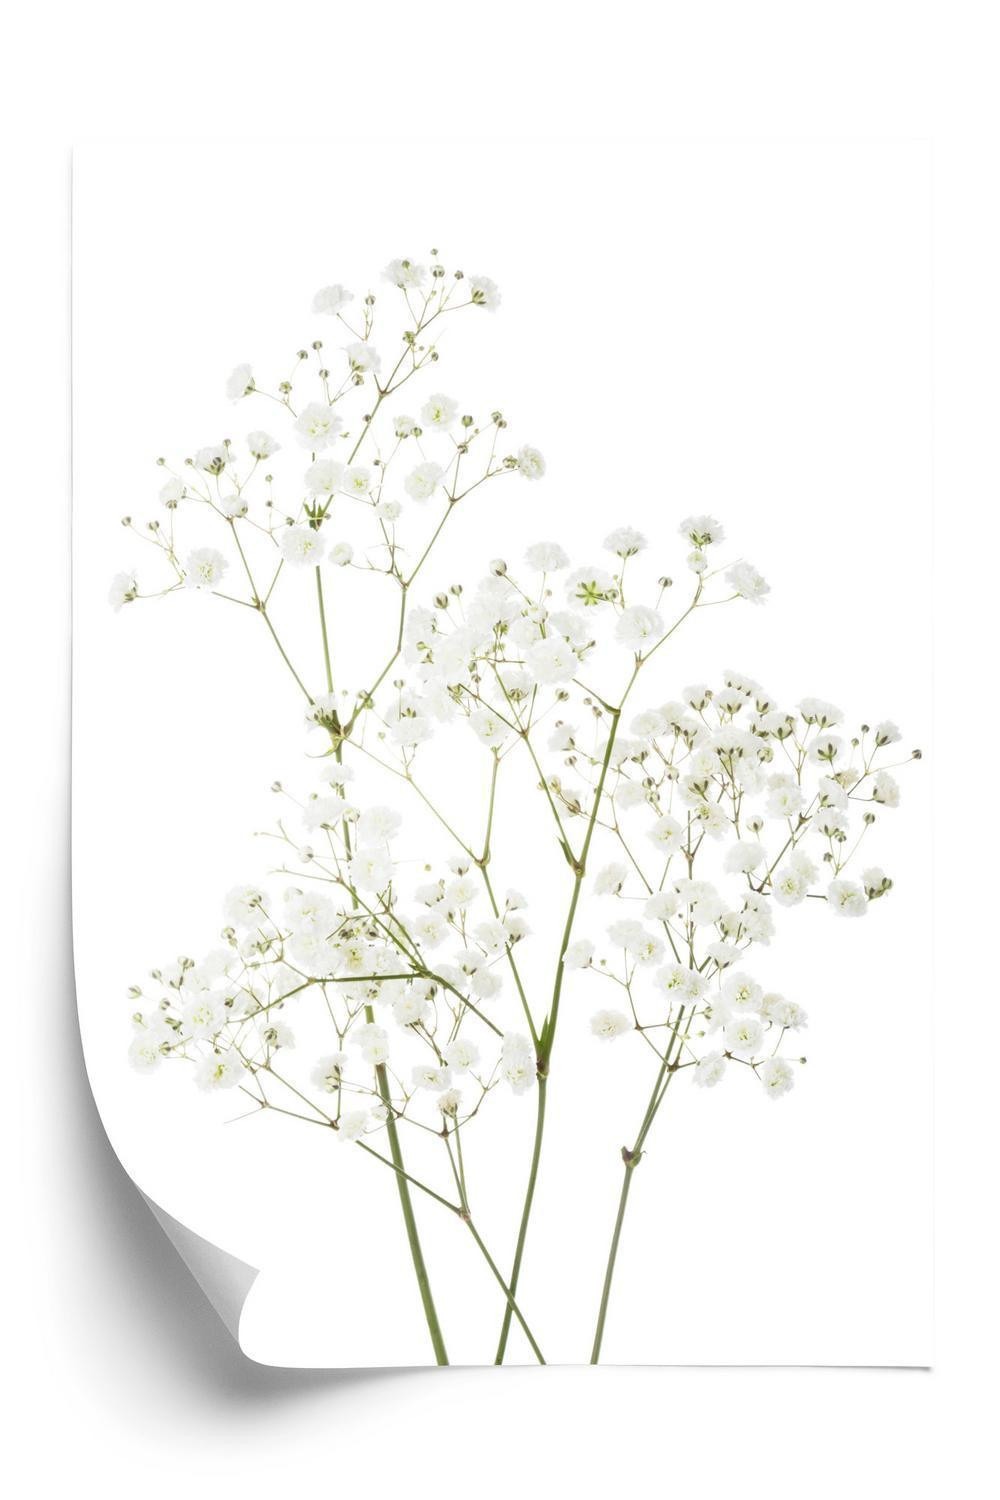 Plakat - Fire grene med små hvide blomster